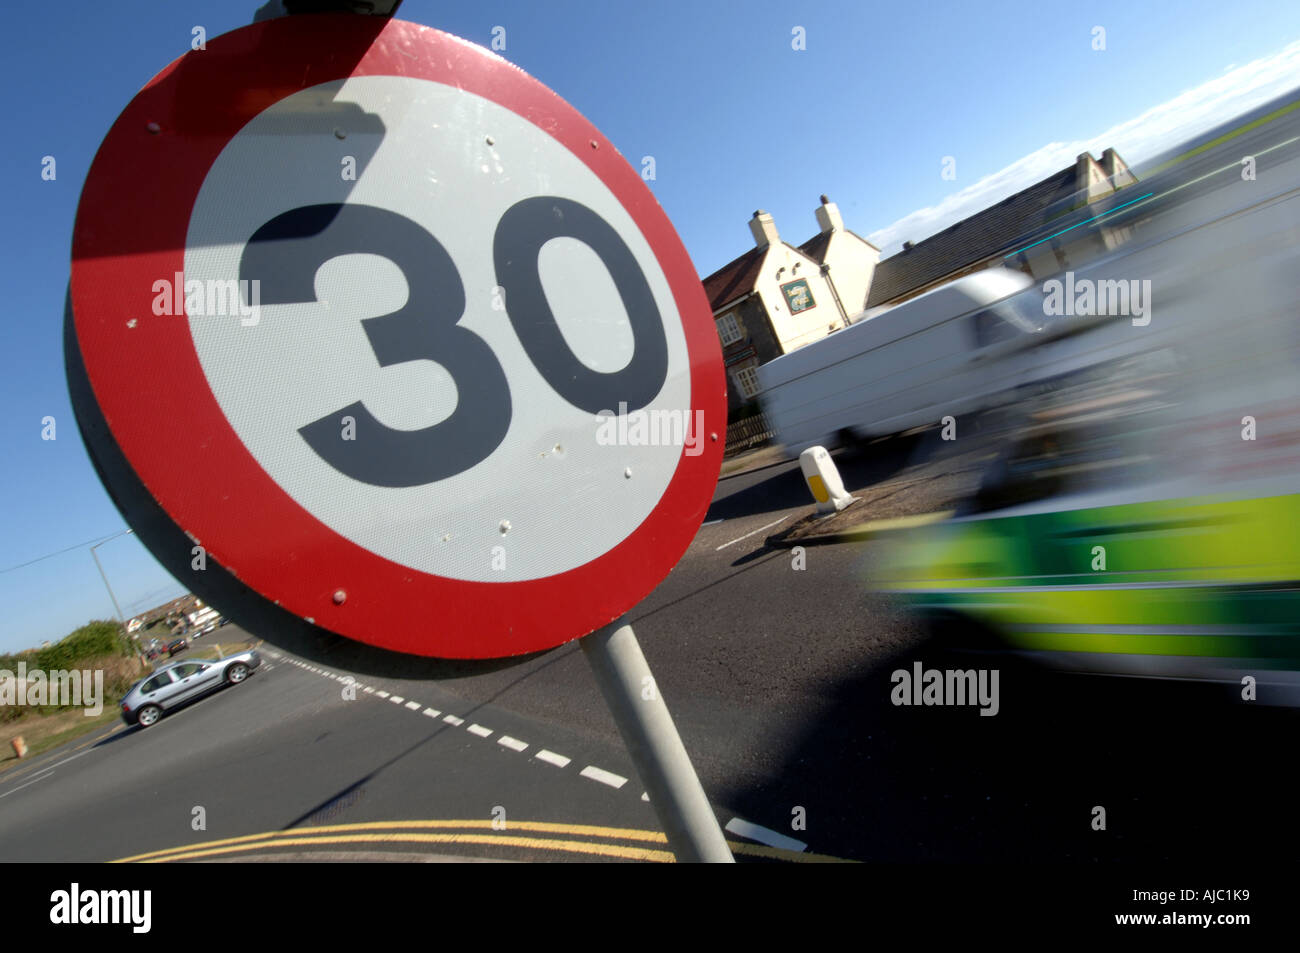 Un ambulanza gare in un 30 mph miglia per ora il limite massimo di velocità zona contrassegnata da un 30 mph segnale di avvertimento in corrispondenza di un incrocio stradale. Foto Stock